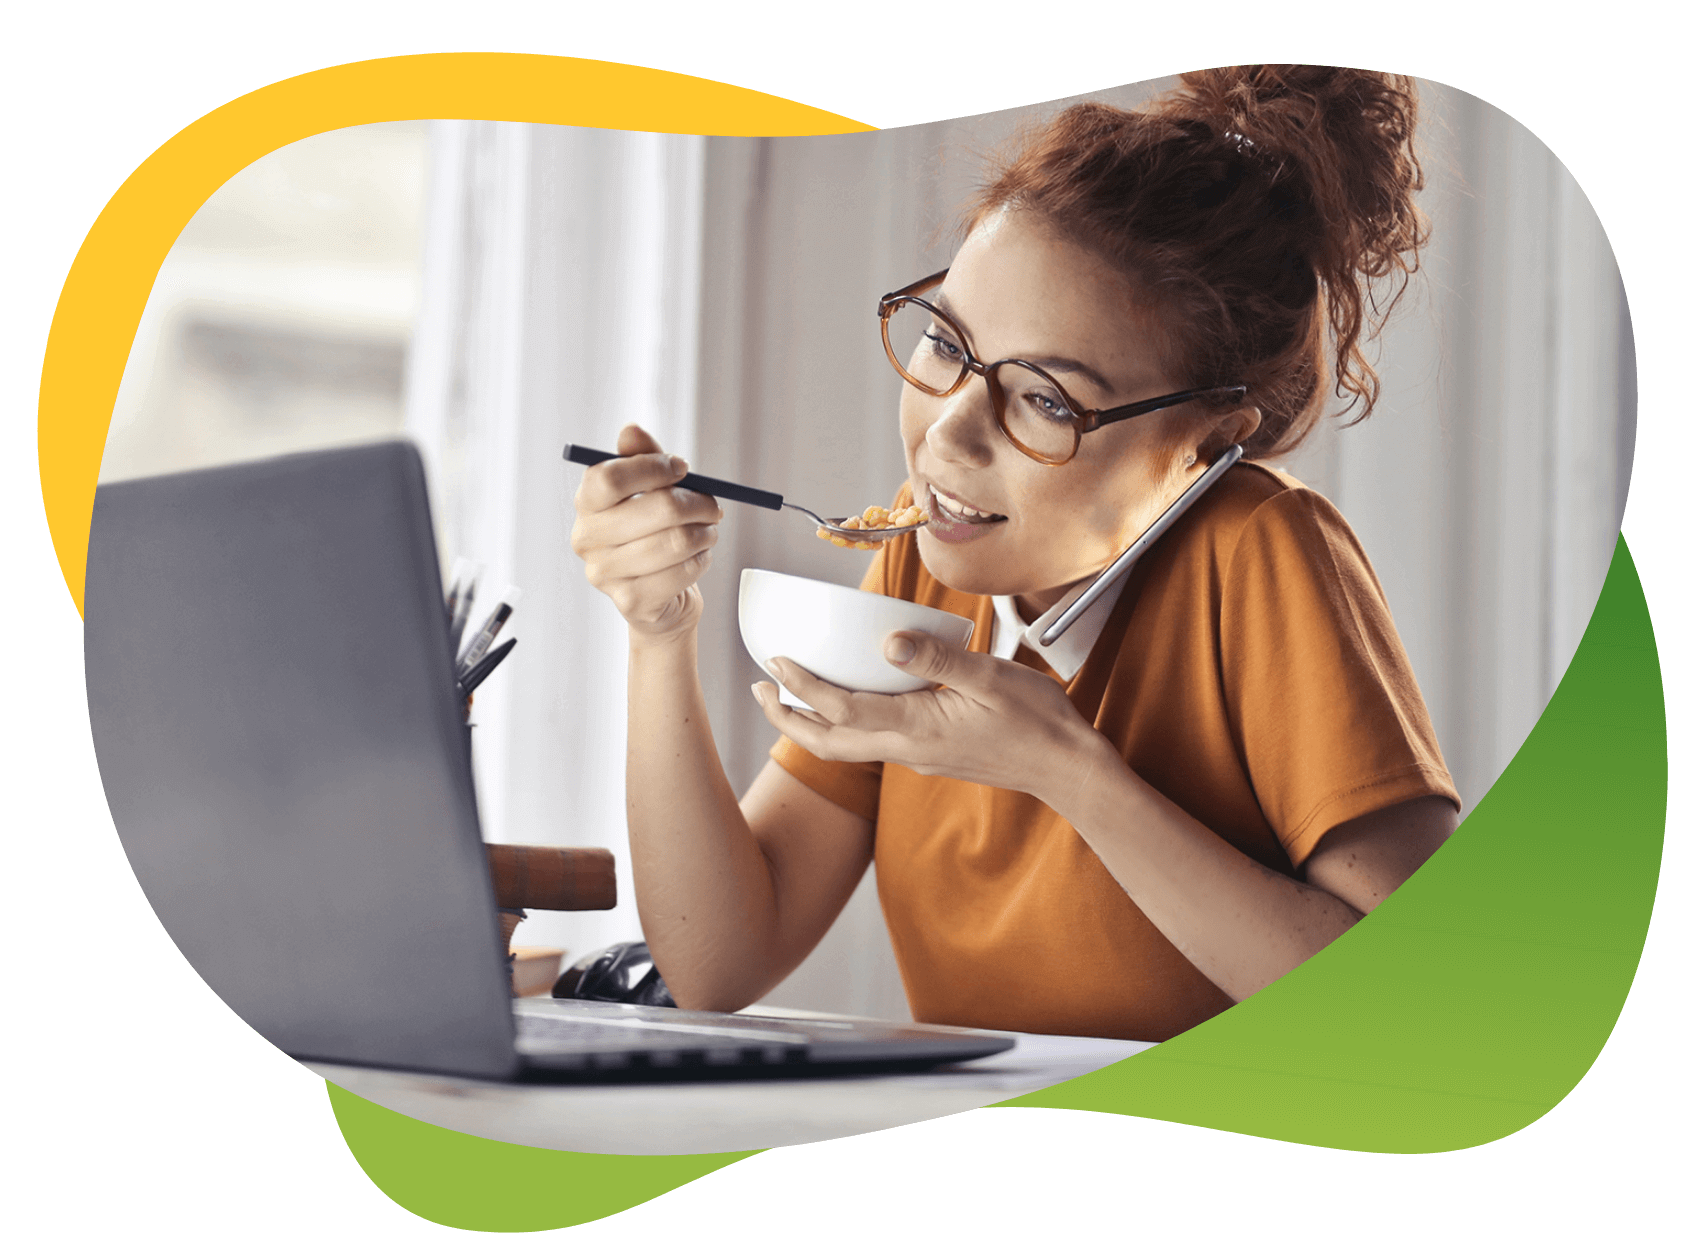 Młoda kobieta w okularach siedzi przed laptopem, jednocześnie rozmawia przez telefon i je posiłek